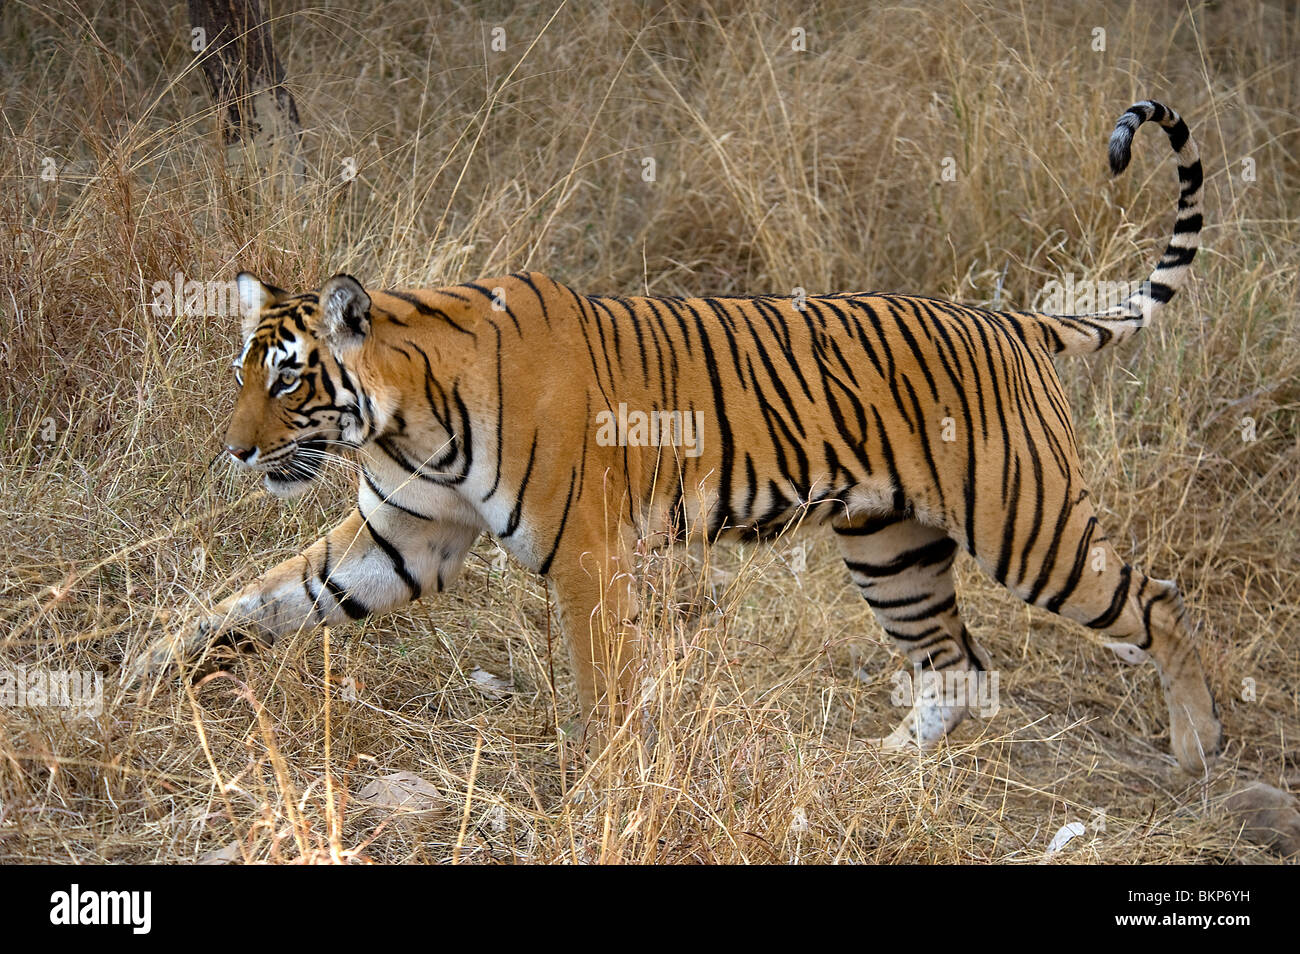 Femme Tigre du Bengale, Panthera tigris, marche à l'herbe sèche, de l'Inde NP Ranthambore Banque D'Images